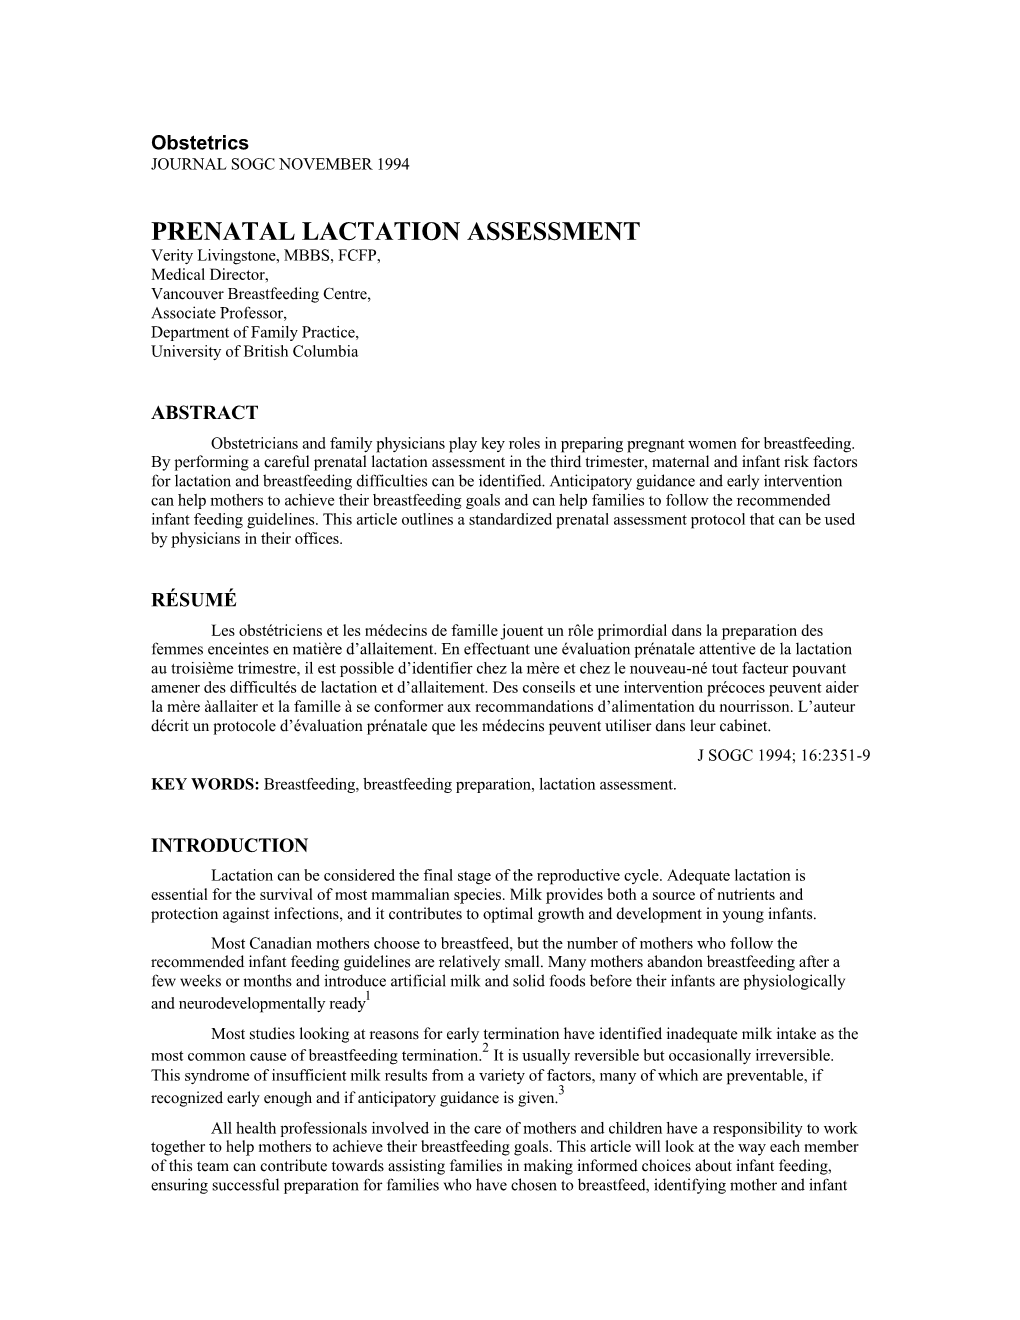 Prenatal Lactation Assessment